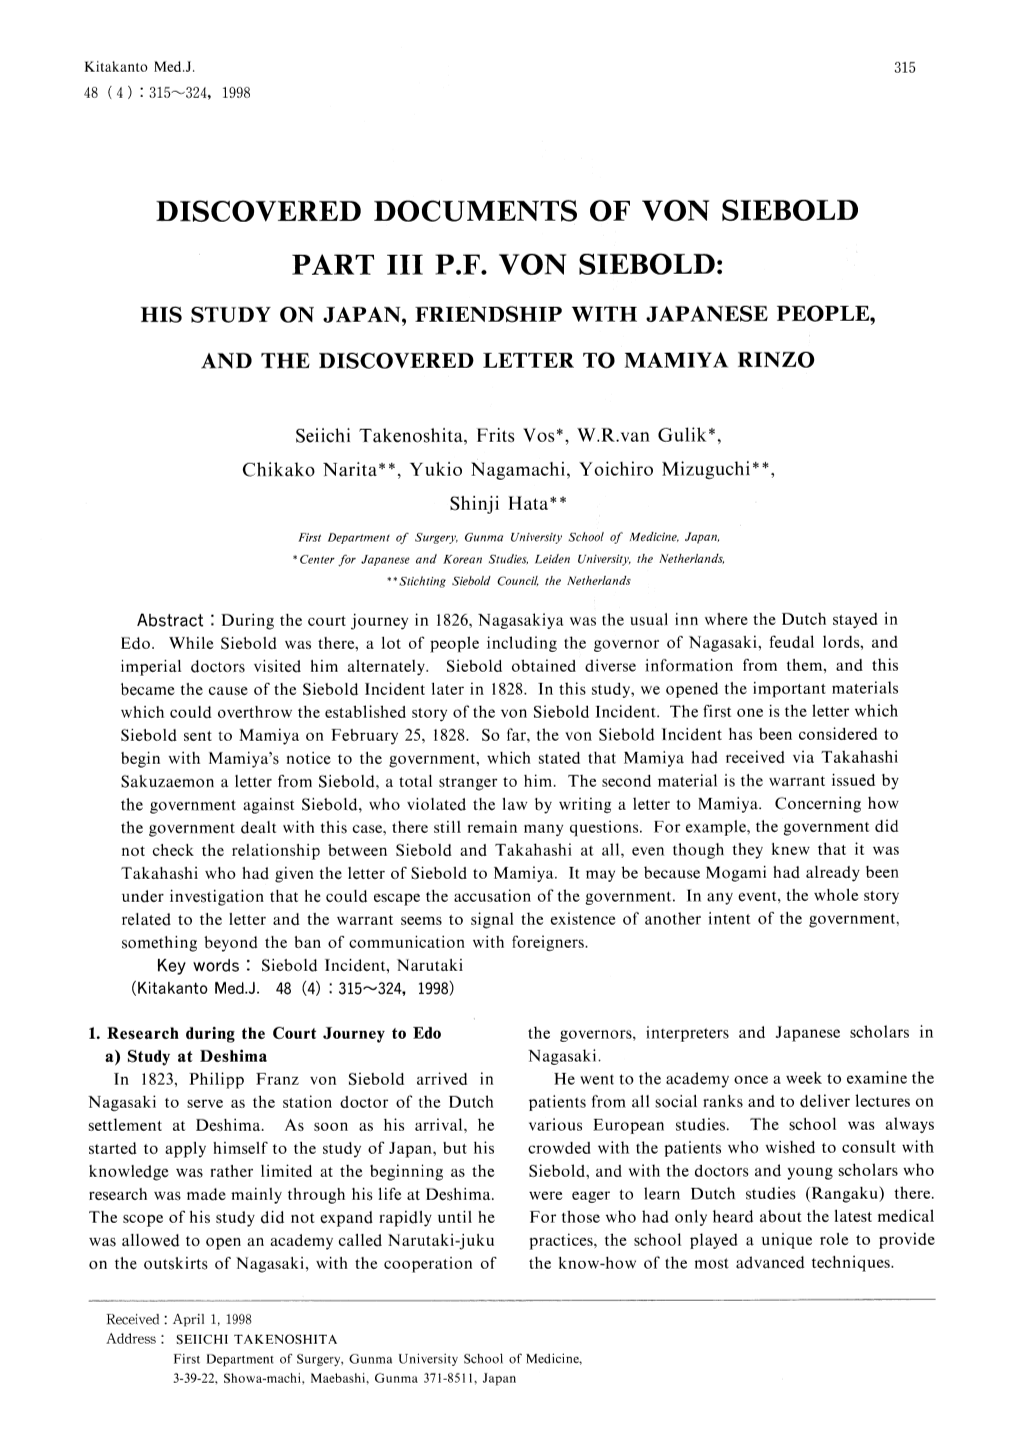 Discovered Documents of Von Siebold Part Iii Pf